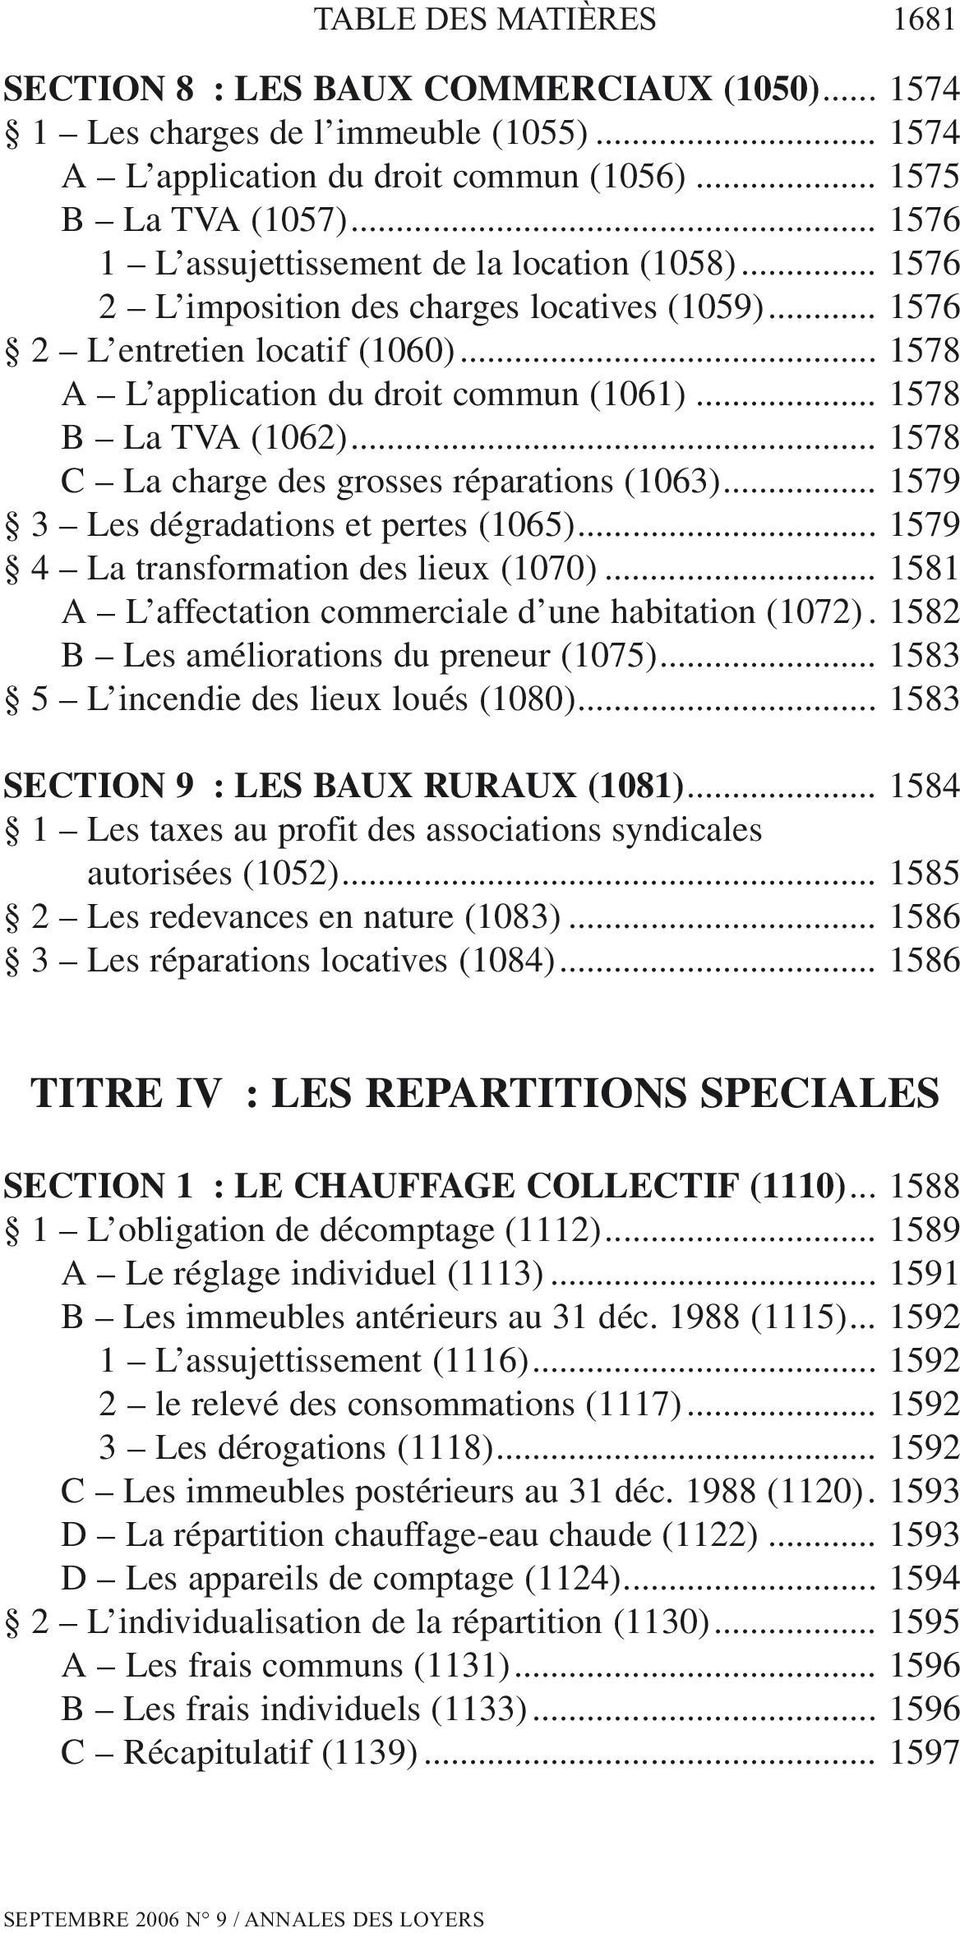 .. 1578 B La TVA (1062)... 1578 C La charge des grosses réparations (1063)... 1579 3 Les dégradations et pertes (1065)... 1579 4 La transformation des lieux (1070).